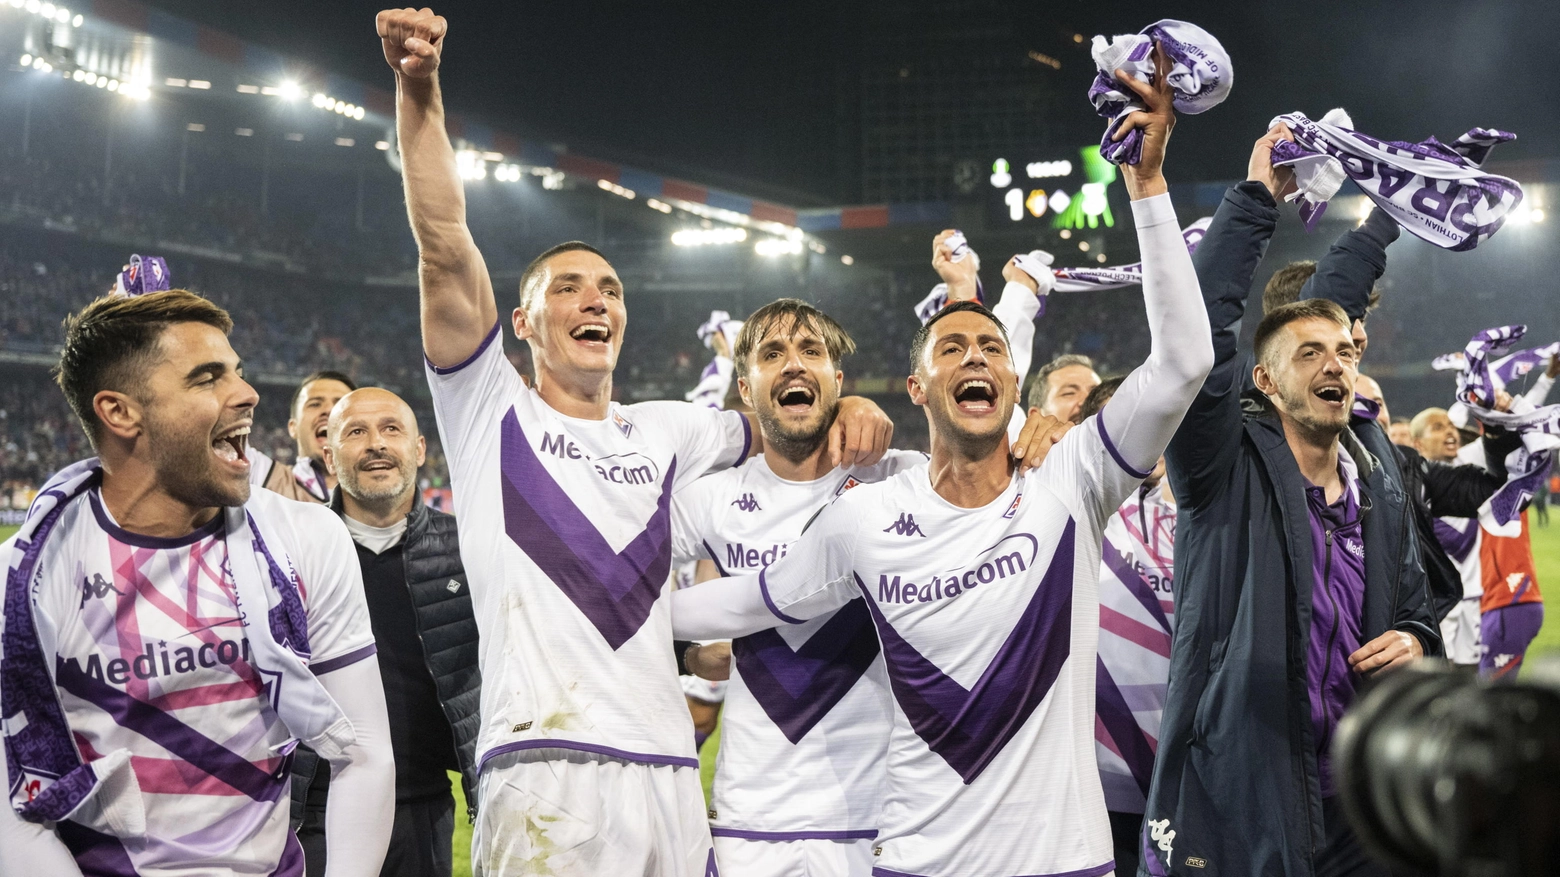 Fiorentina, finale europea dopo 33 anni. E il club è nella storia del calcio continentale